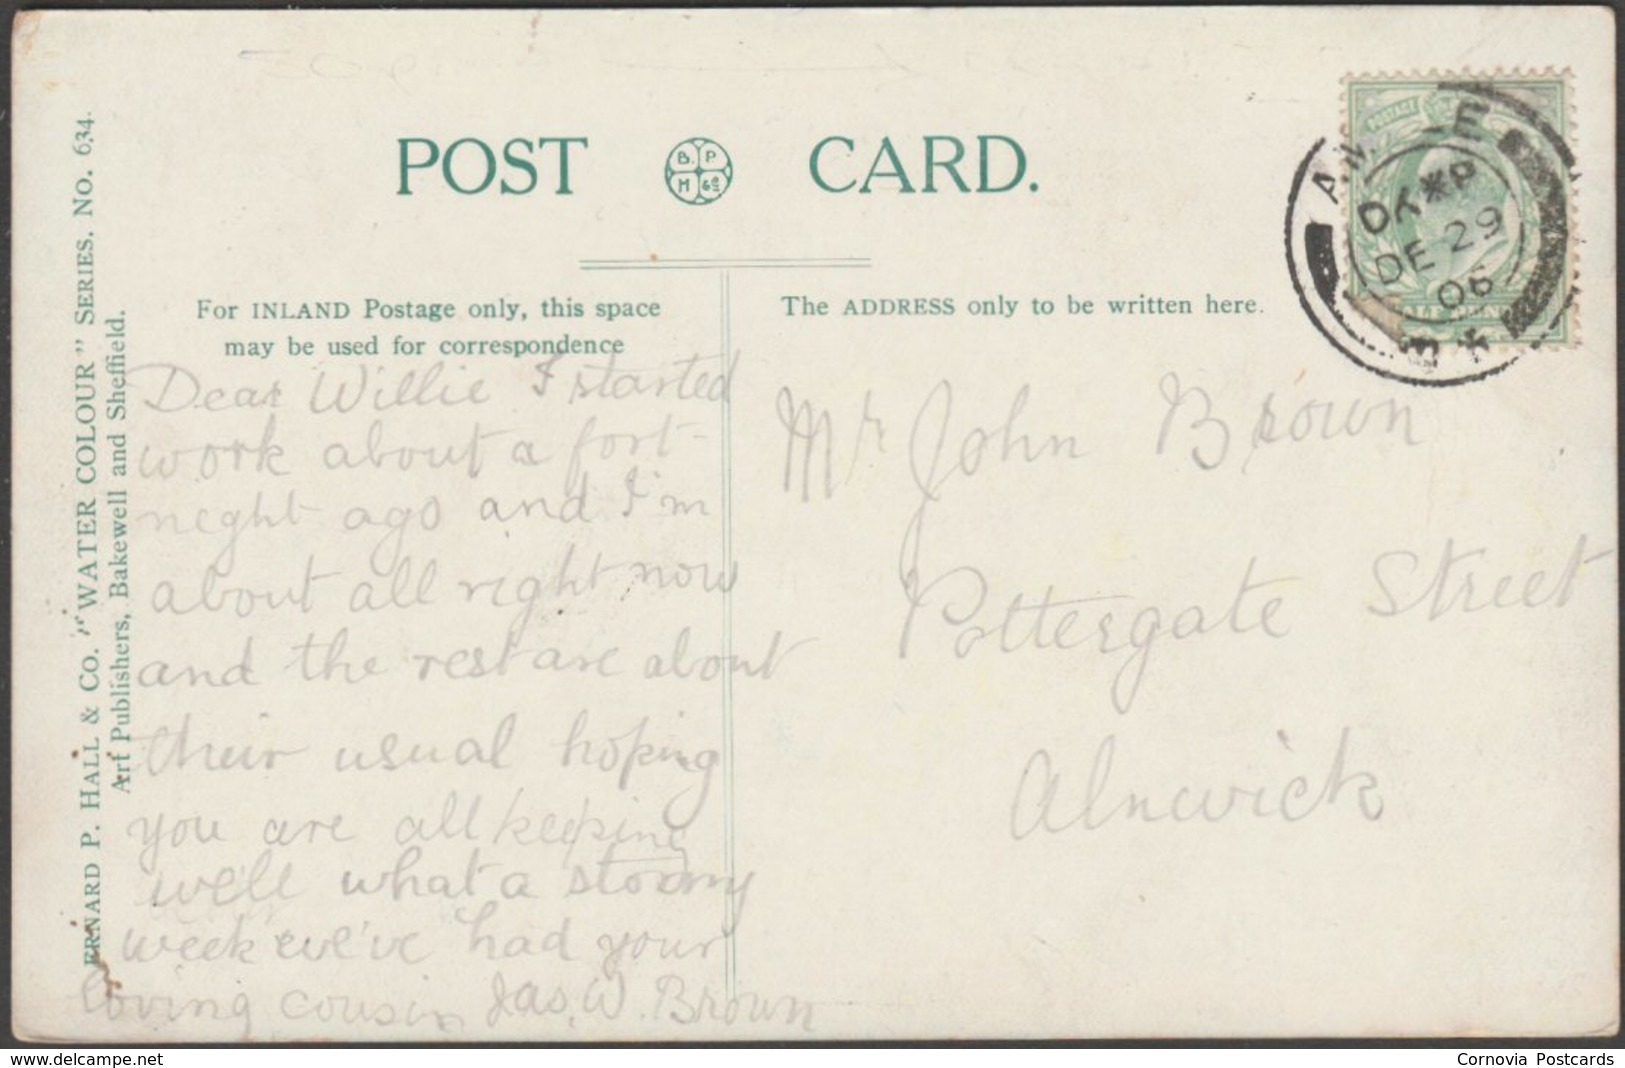 Happy Valley, Llandudno, Caernarvonshire, 1906 - Bernard P Hall Postcard - Caernarvonshire